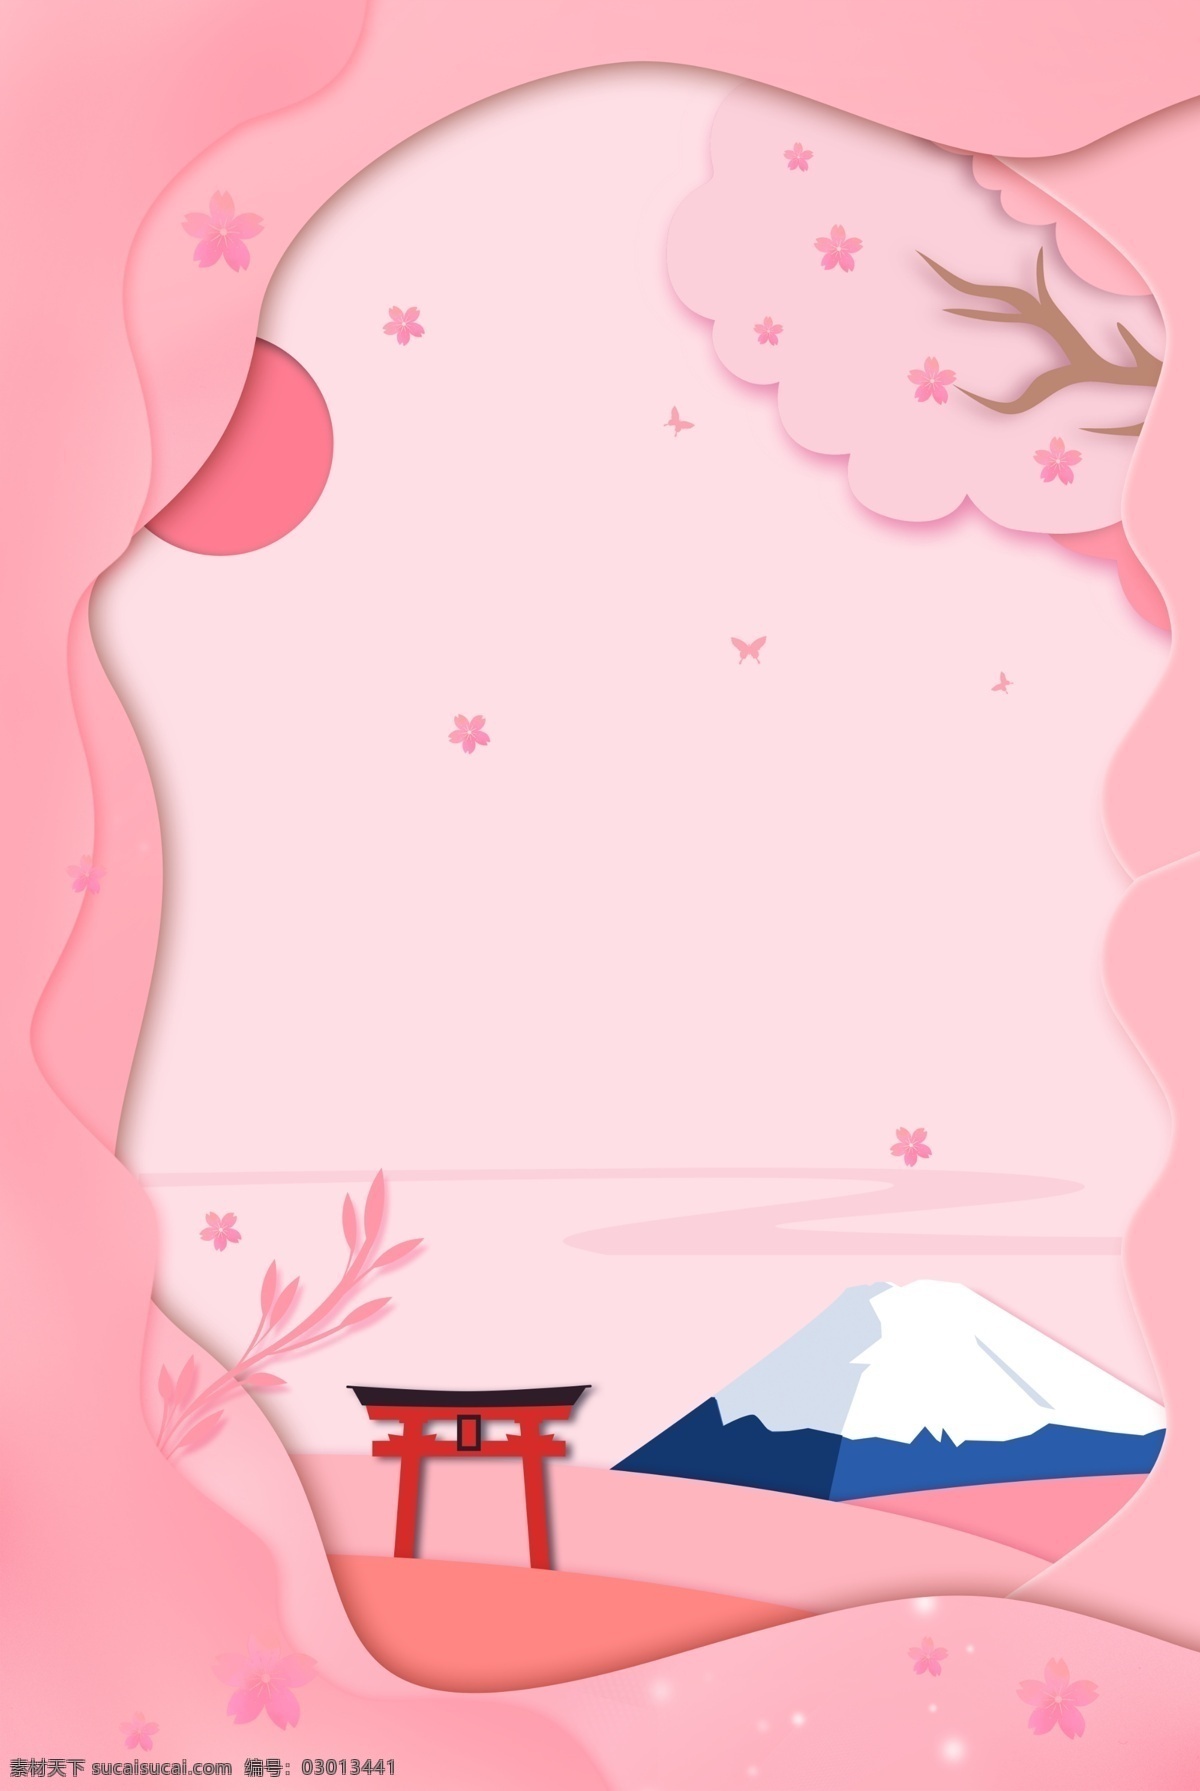 富士山 插画 卡通 边框 粉色 可爱 背景 分层 背景素材